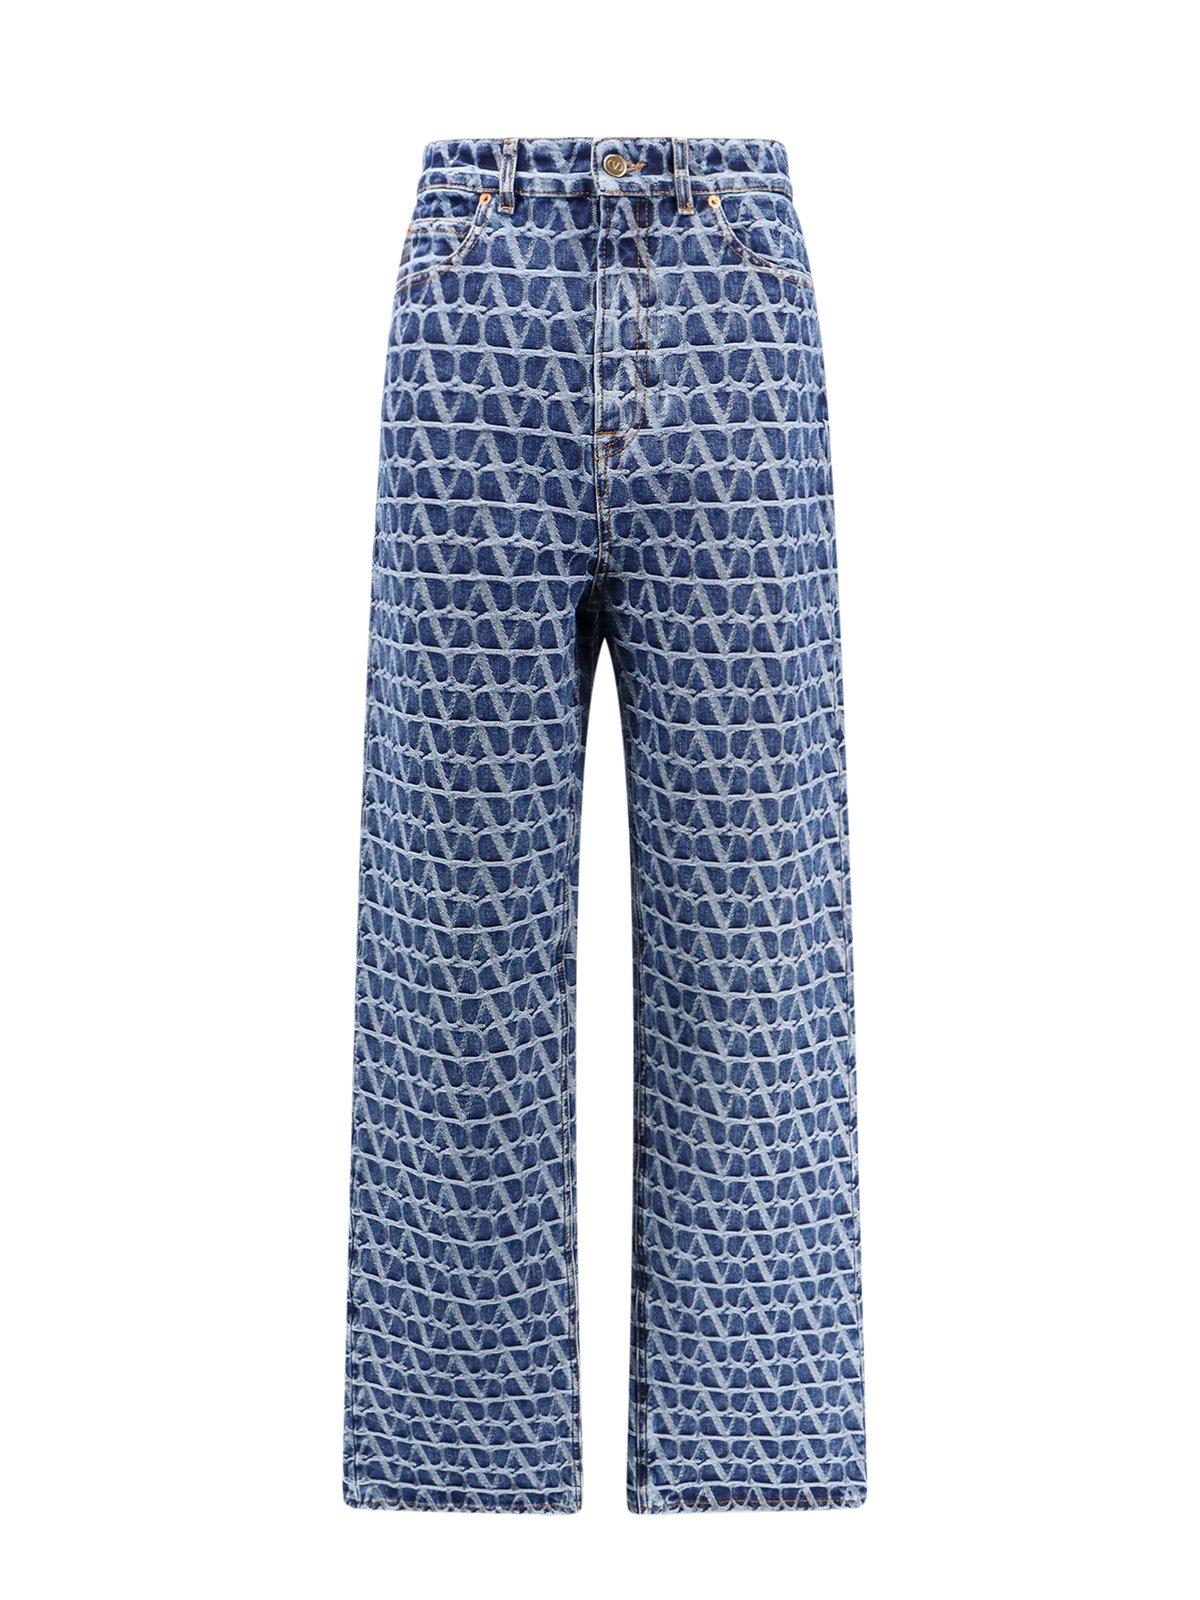 Shop Valentino Toile Iconographe Monogram Jeans In Medium Blue Denim